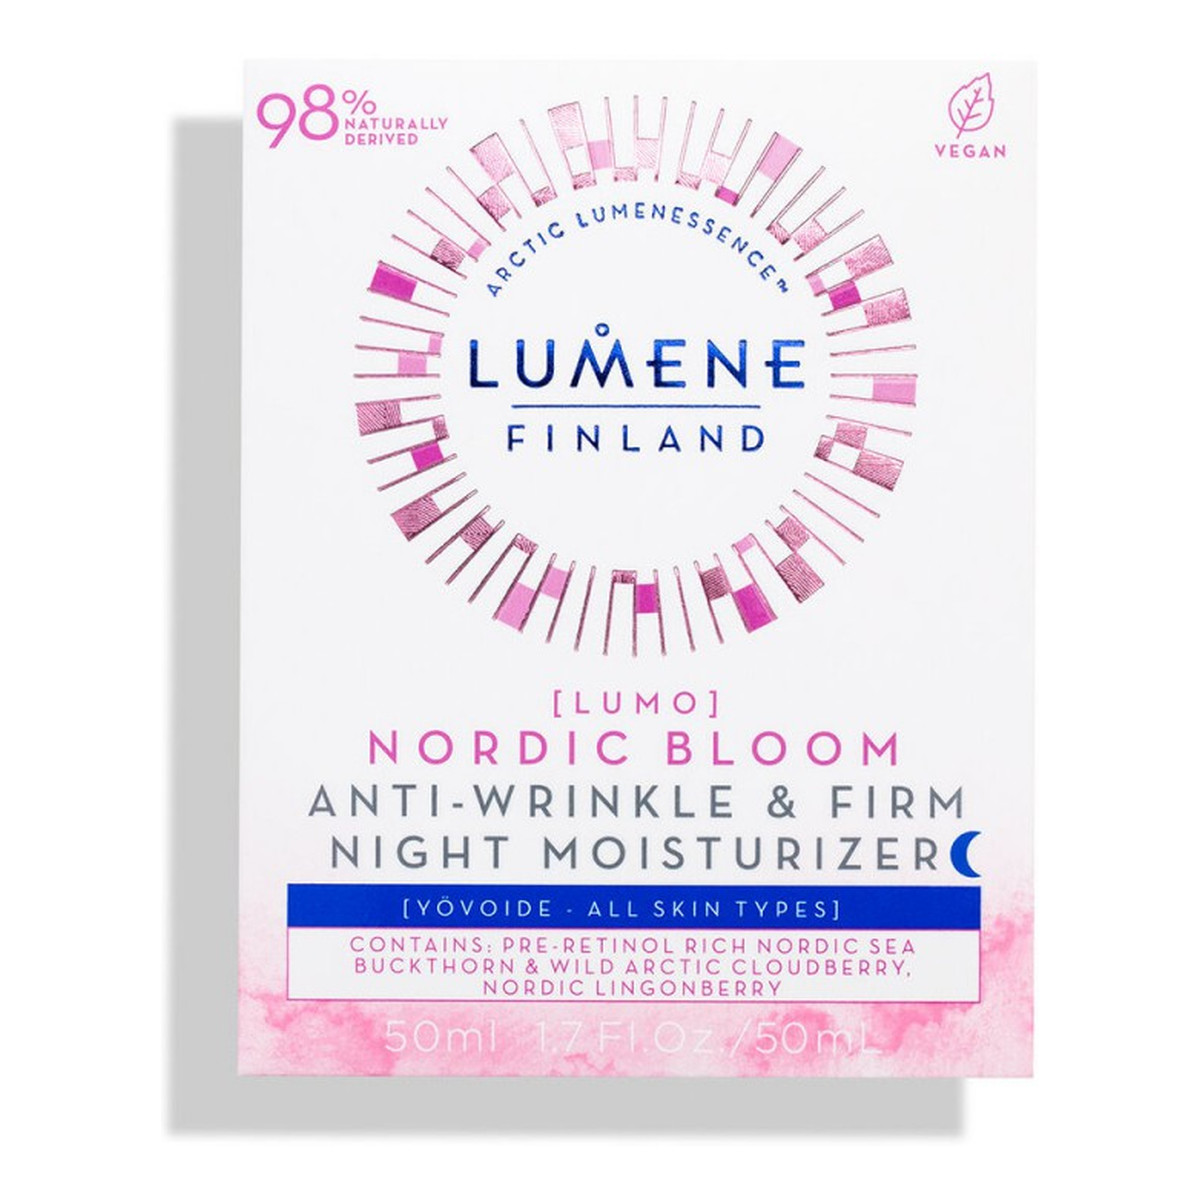 Lumene Nordic Bloom Lumo Anti-Wrinkle & Firm Night Moisturizer przeciwzmarszczkowo-ujędrniający krem na noc 50ml